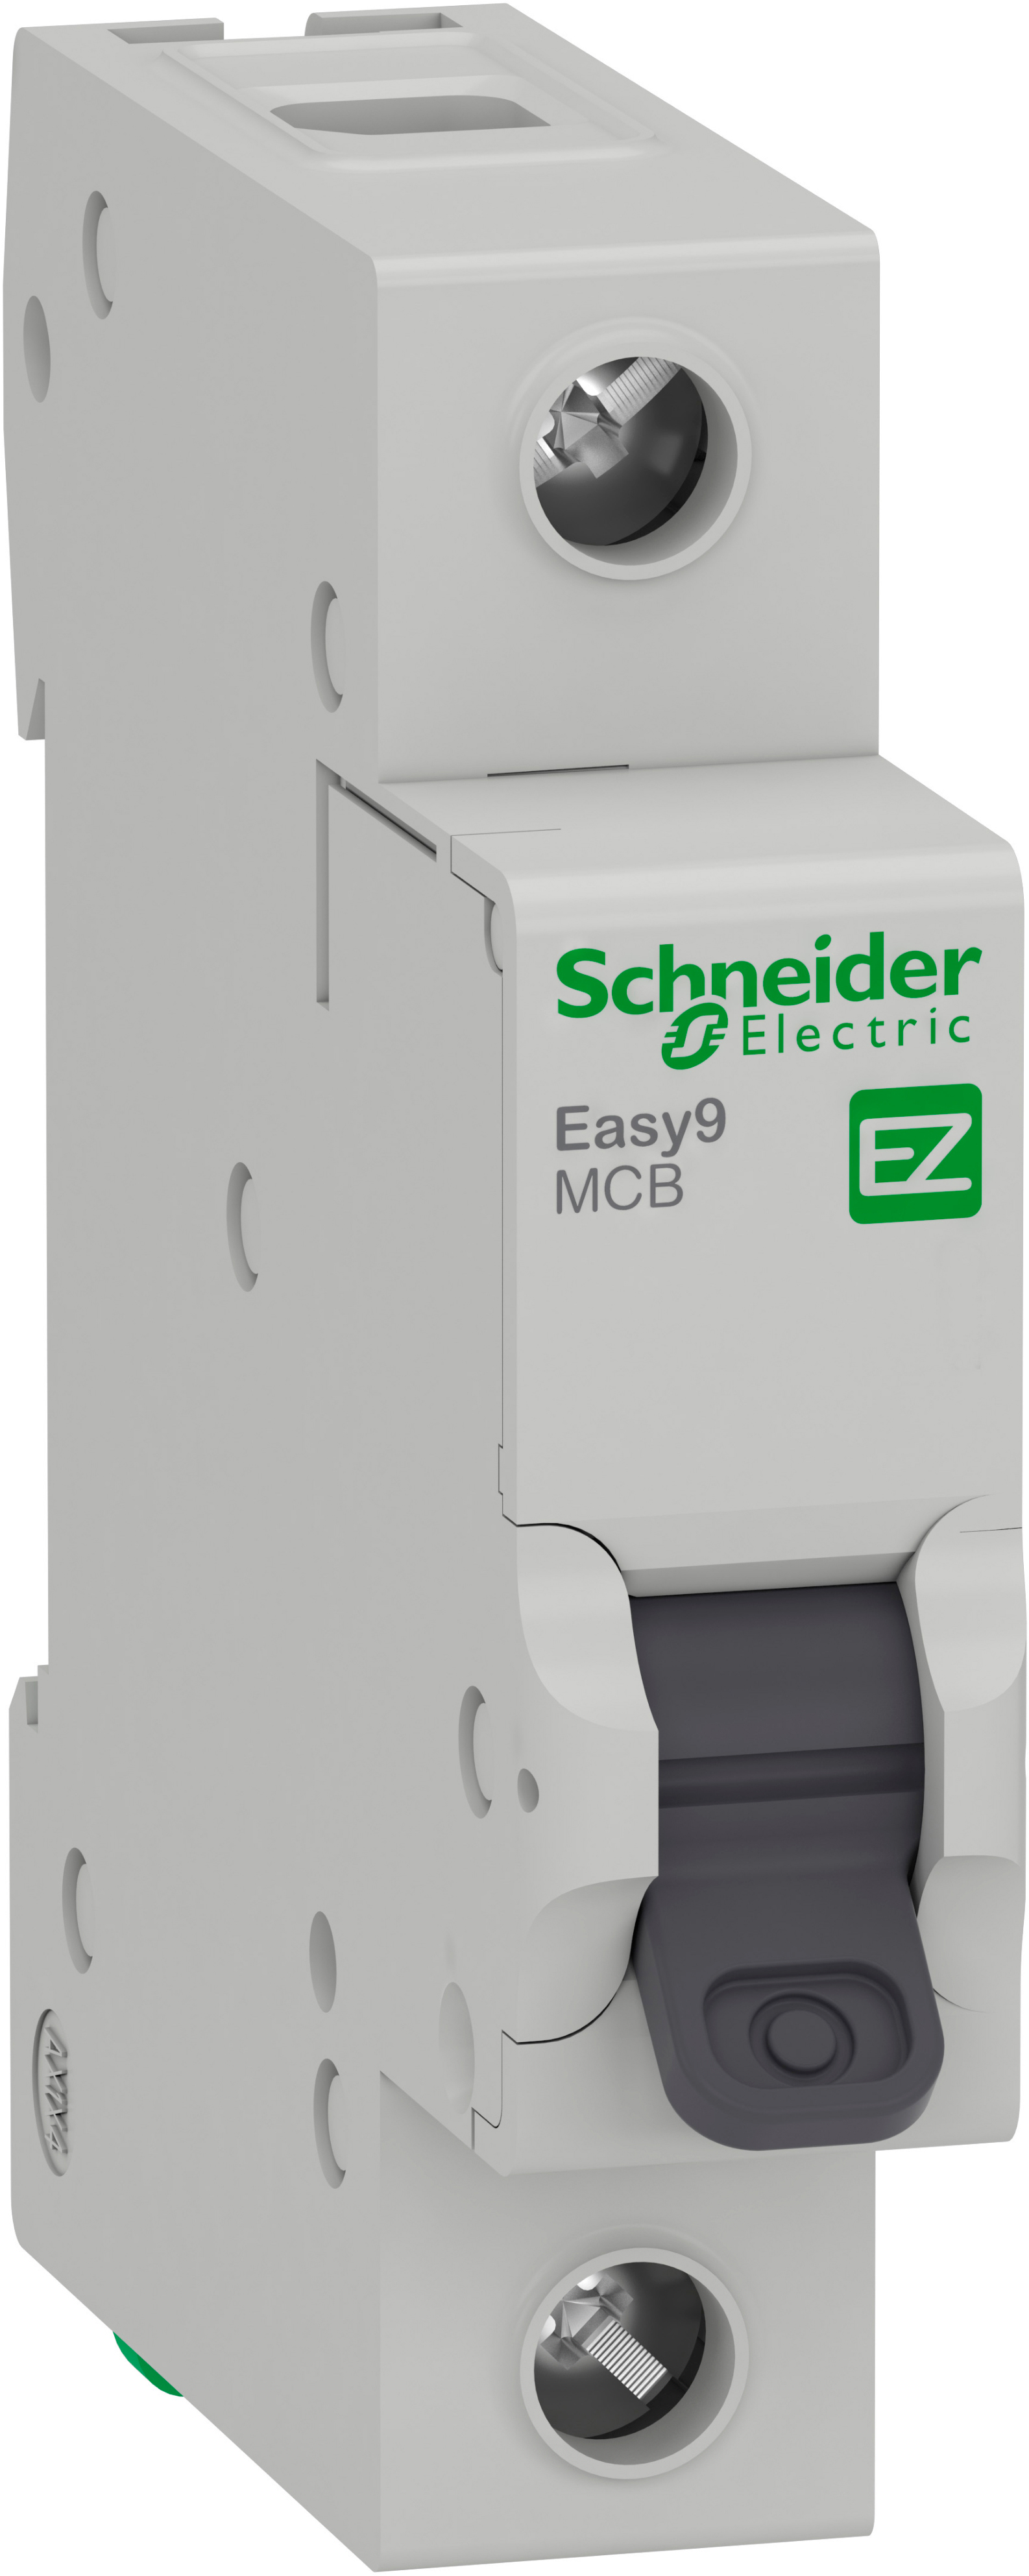 Автоматические выключатели Schneider Electric